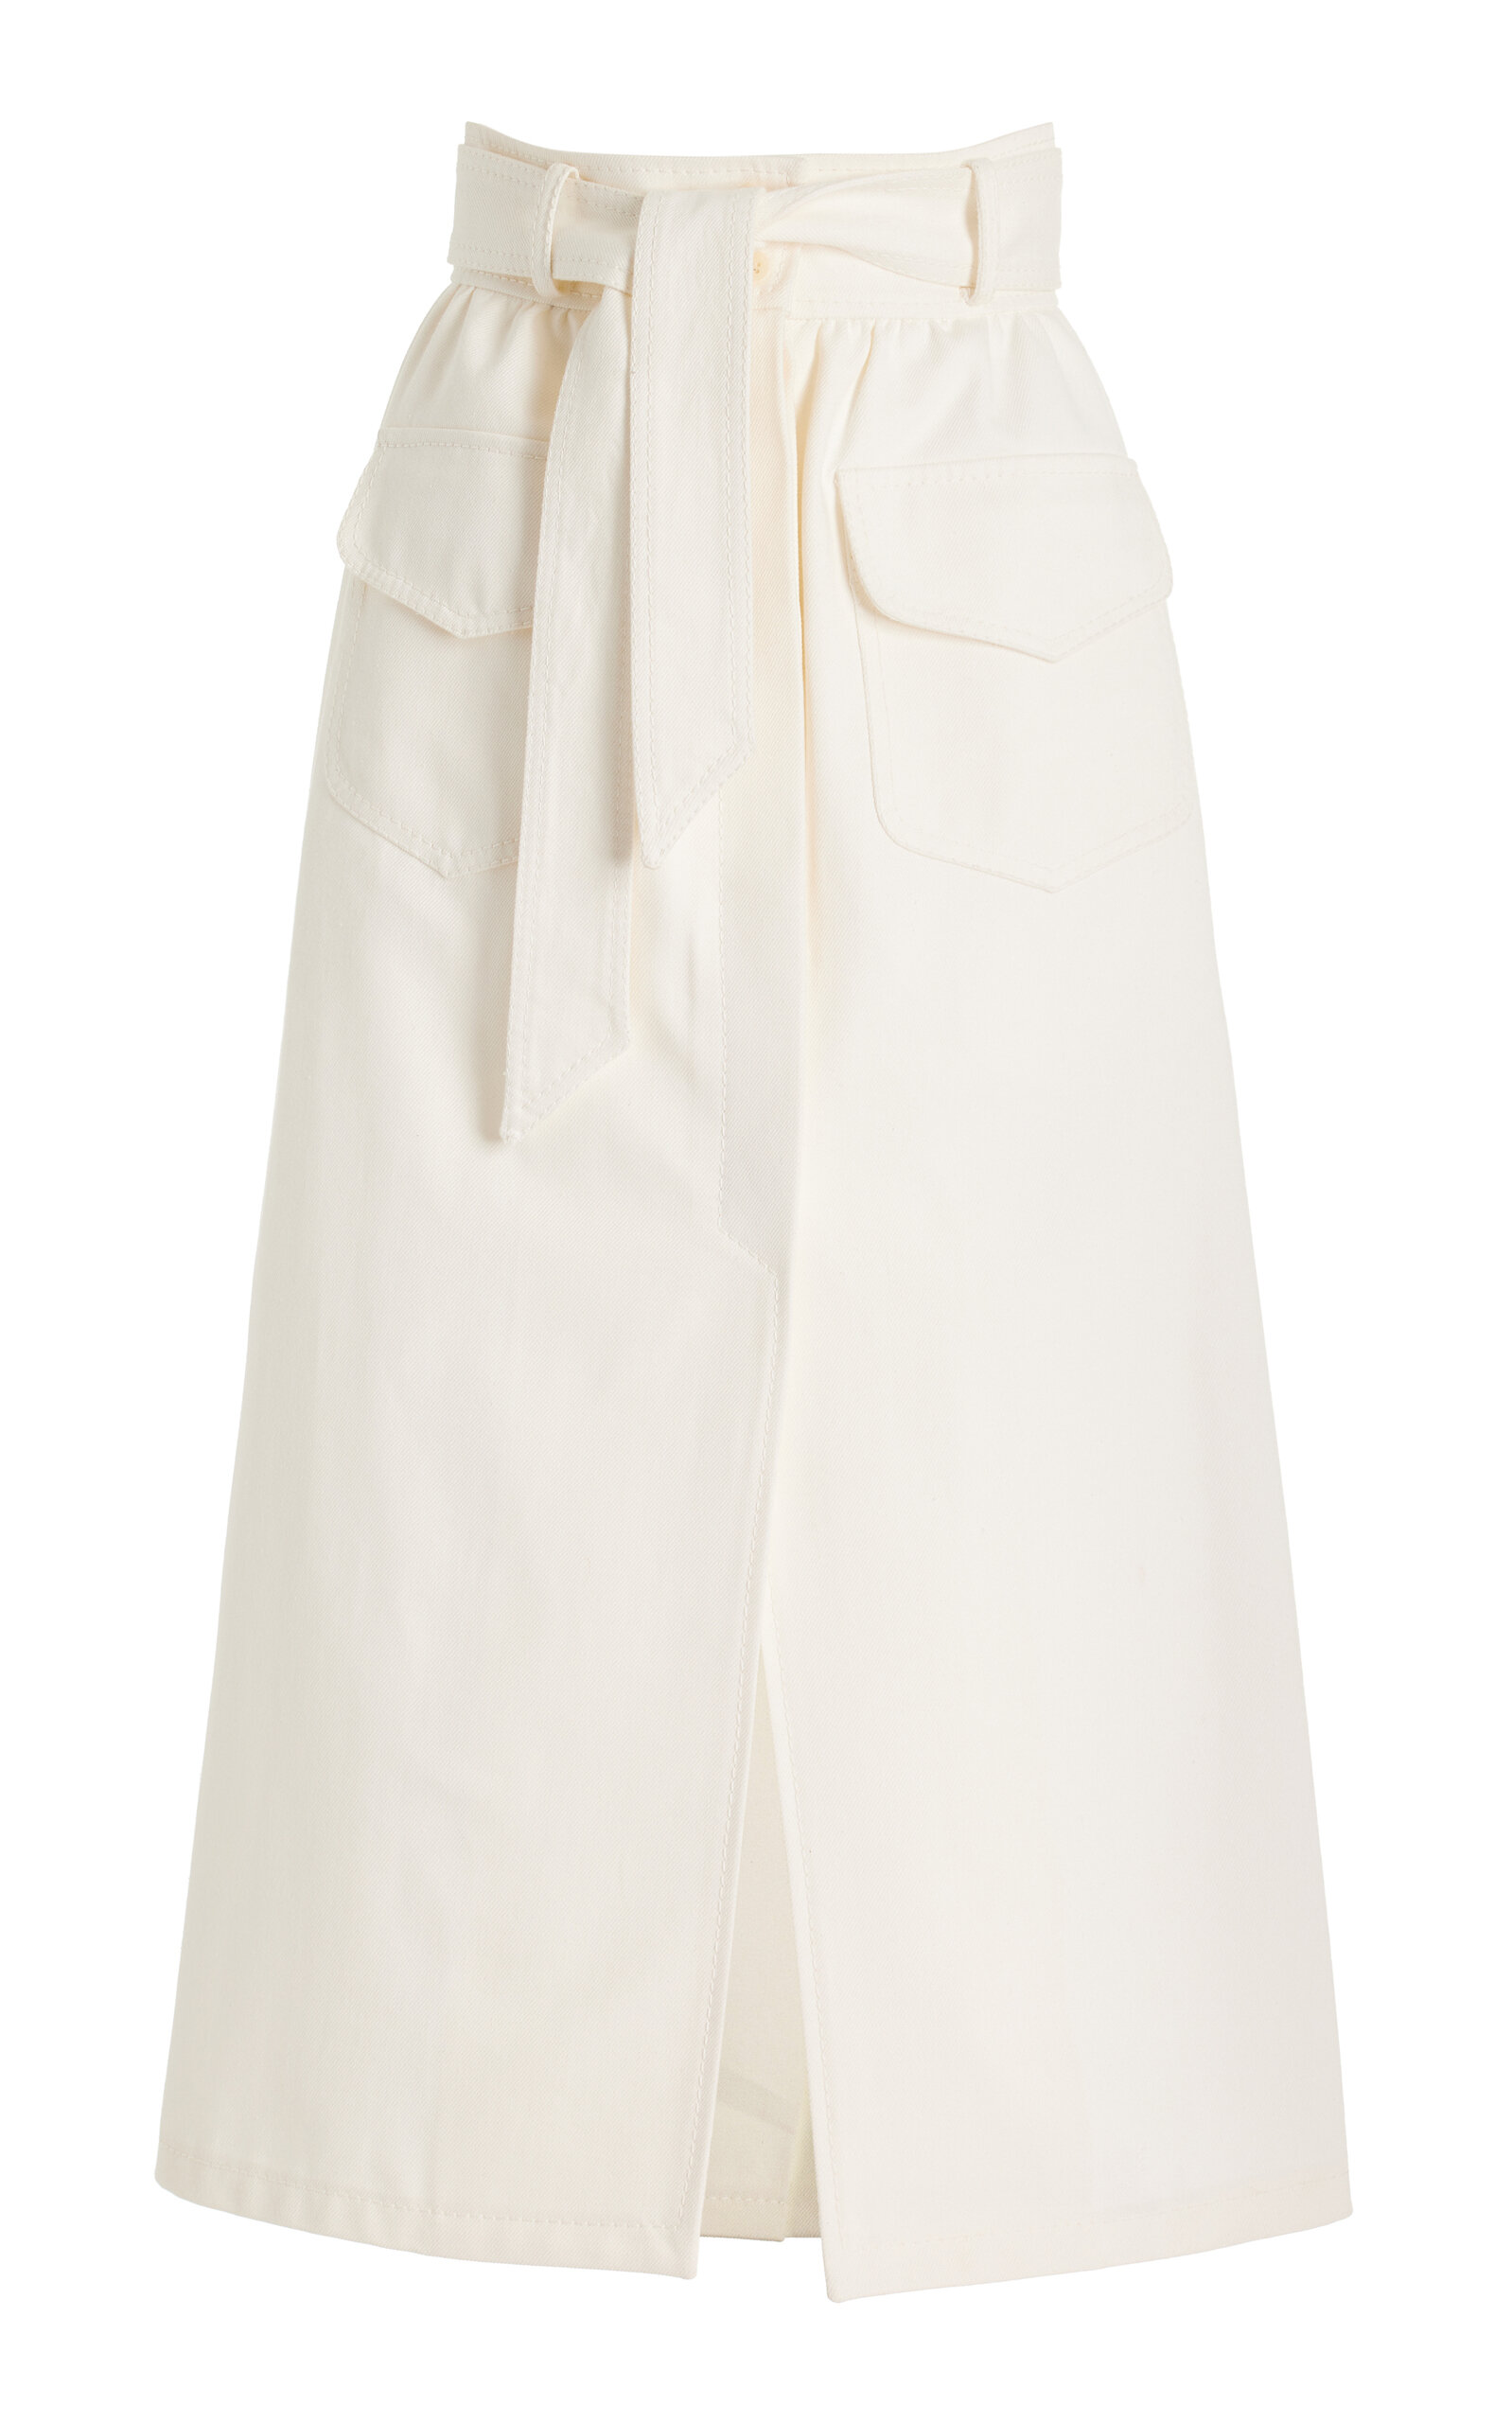 Martin Grant Women's Cotton Midi Skirt